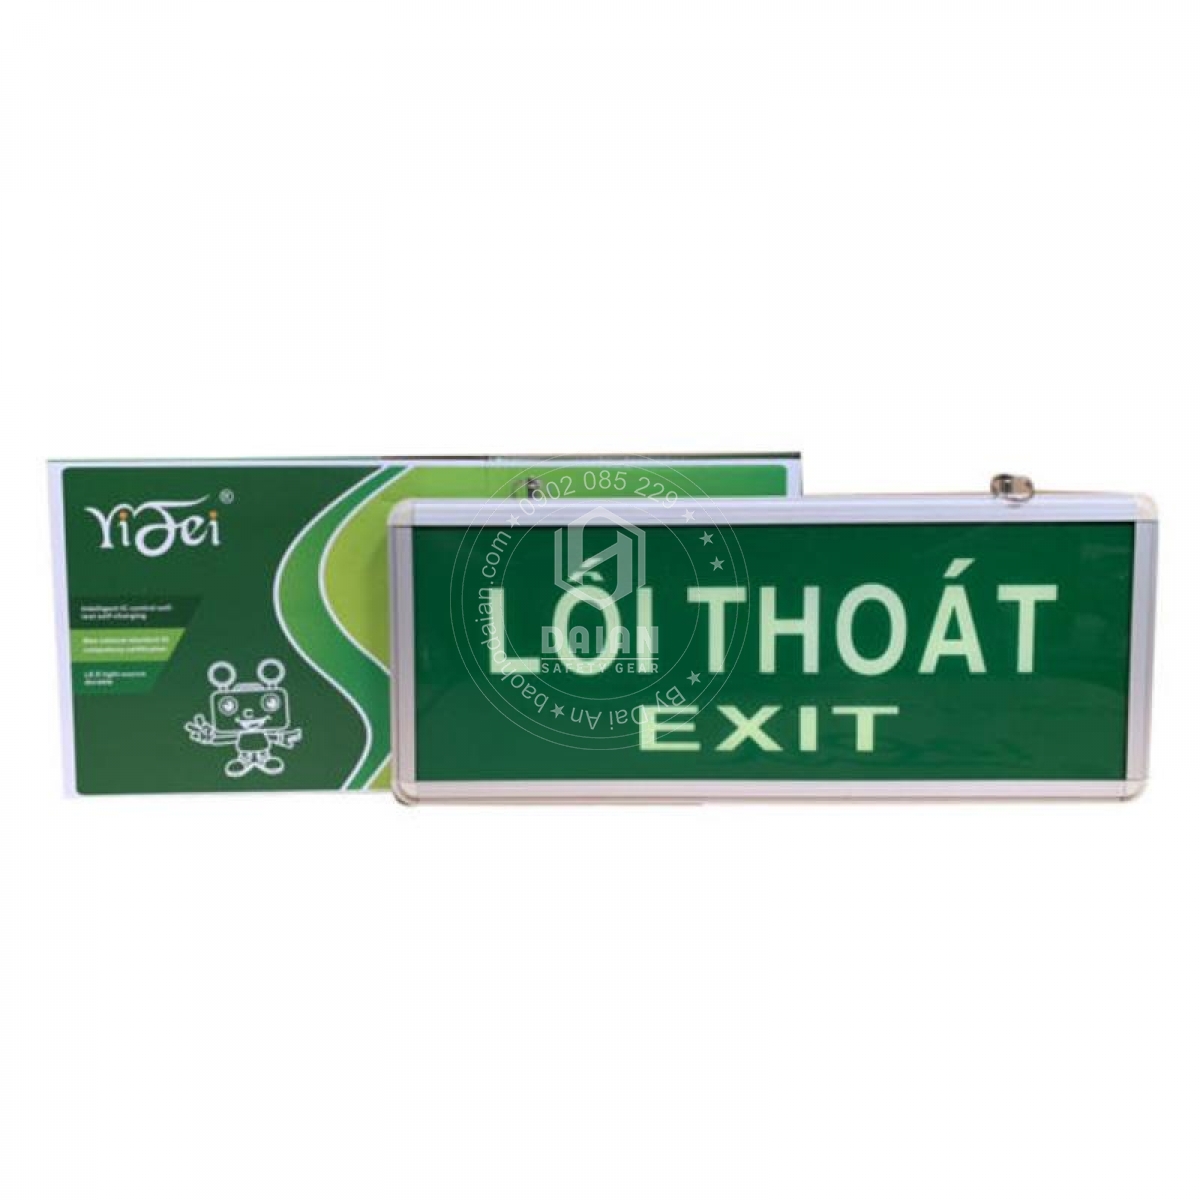 bien-exit-da-quang-yf1017-exit-loi-thoat